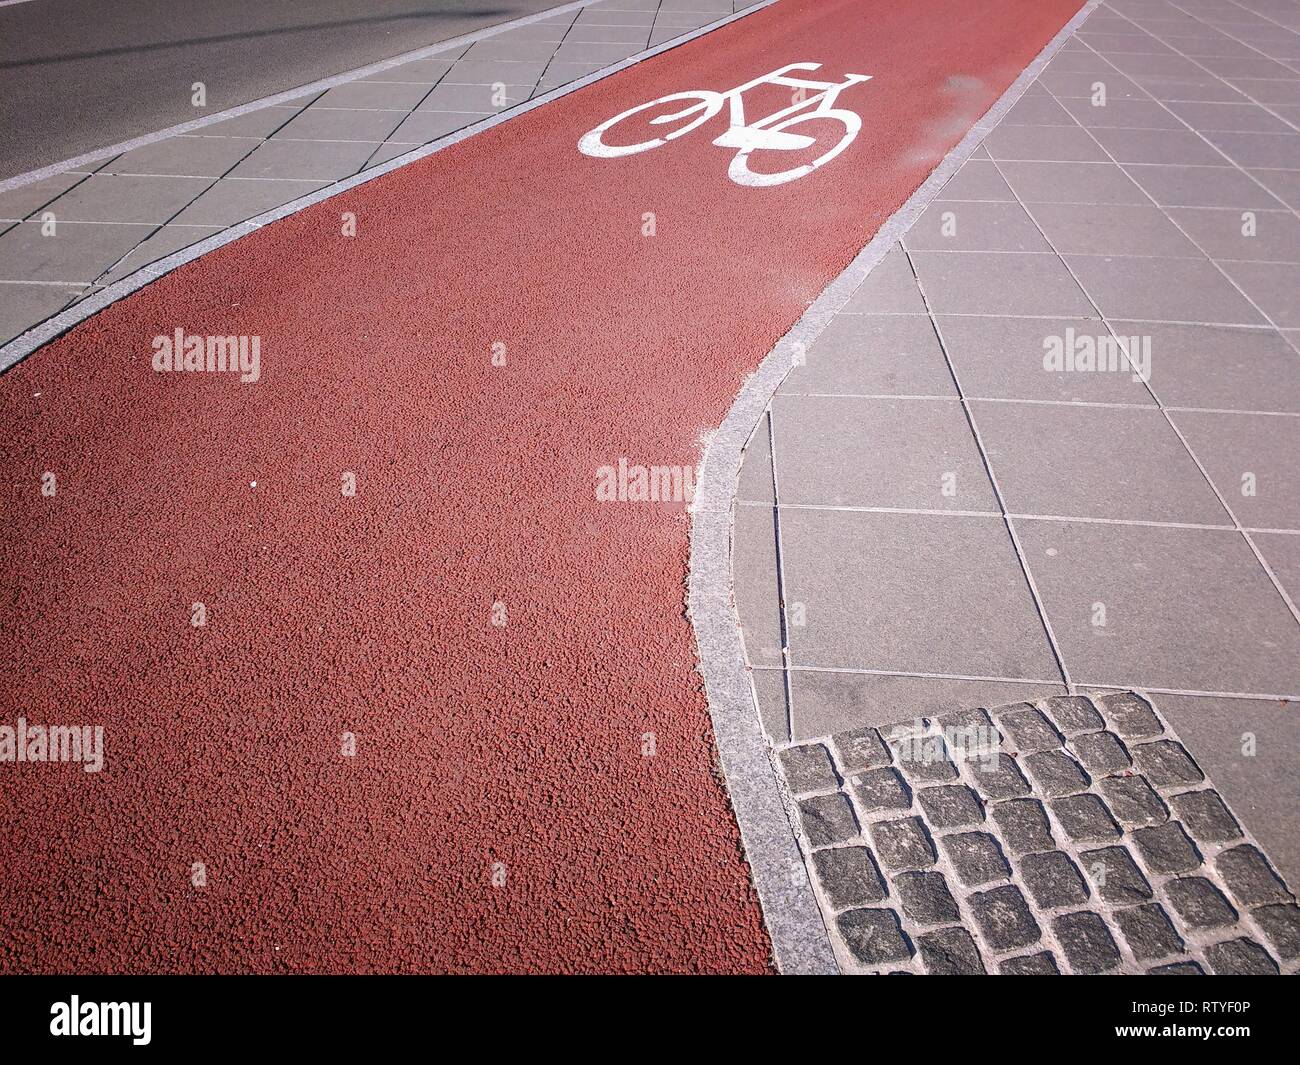 Chemin de randonnée à vélo dans la ville - Katowice, Pologne. Bike Lane. Banque D'Images